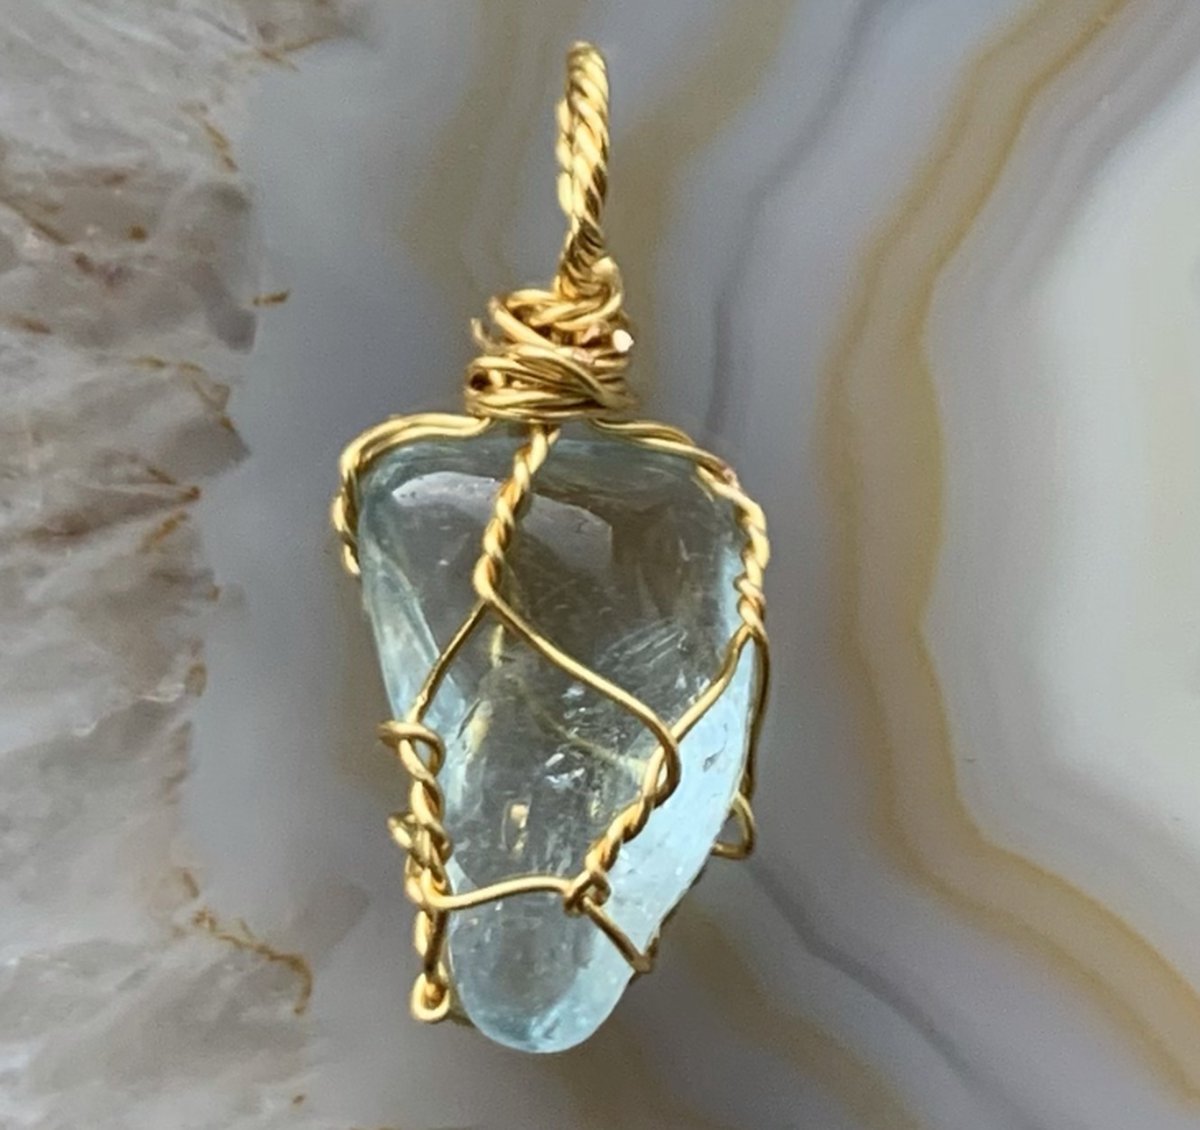 Edelsteen Hanger - Mini - Handgemaakt - Aquamarijn - Aquamarine - Goud - Gold - Crystal necklace